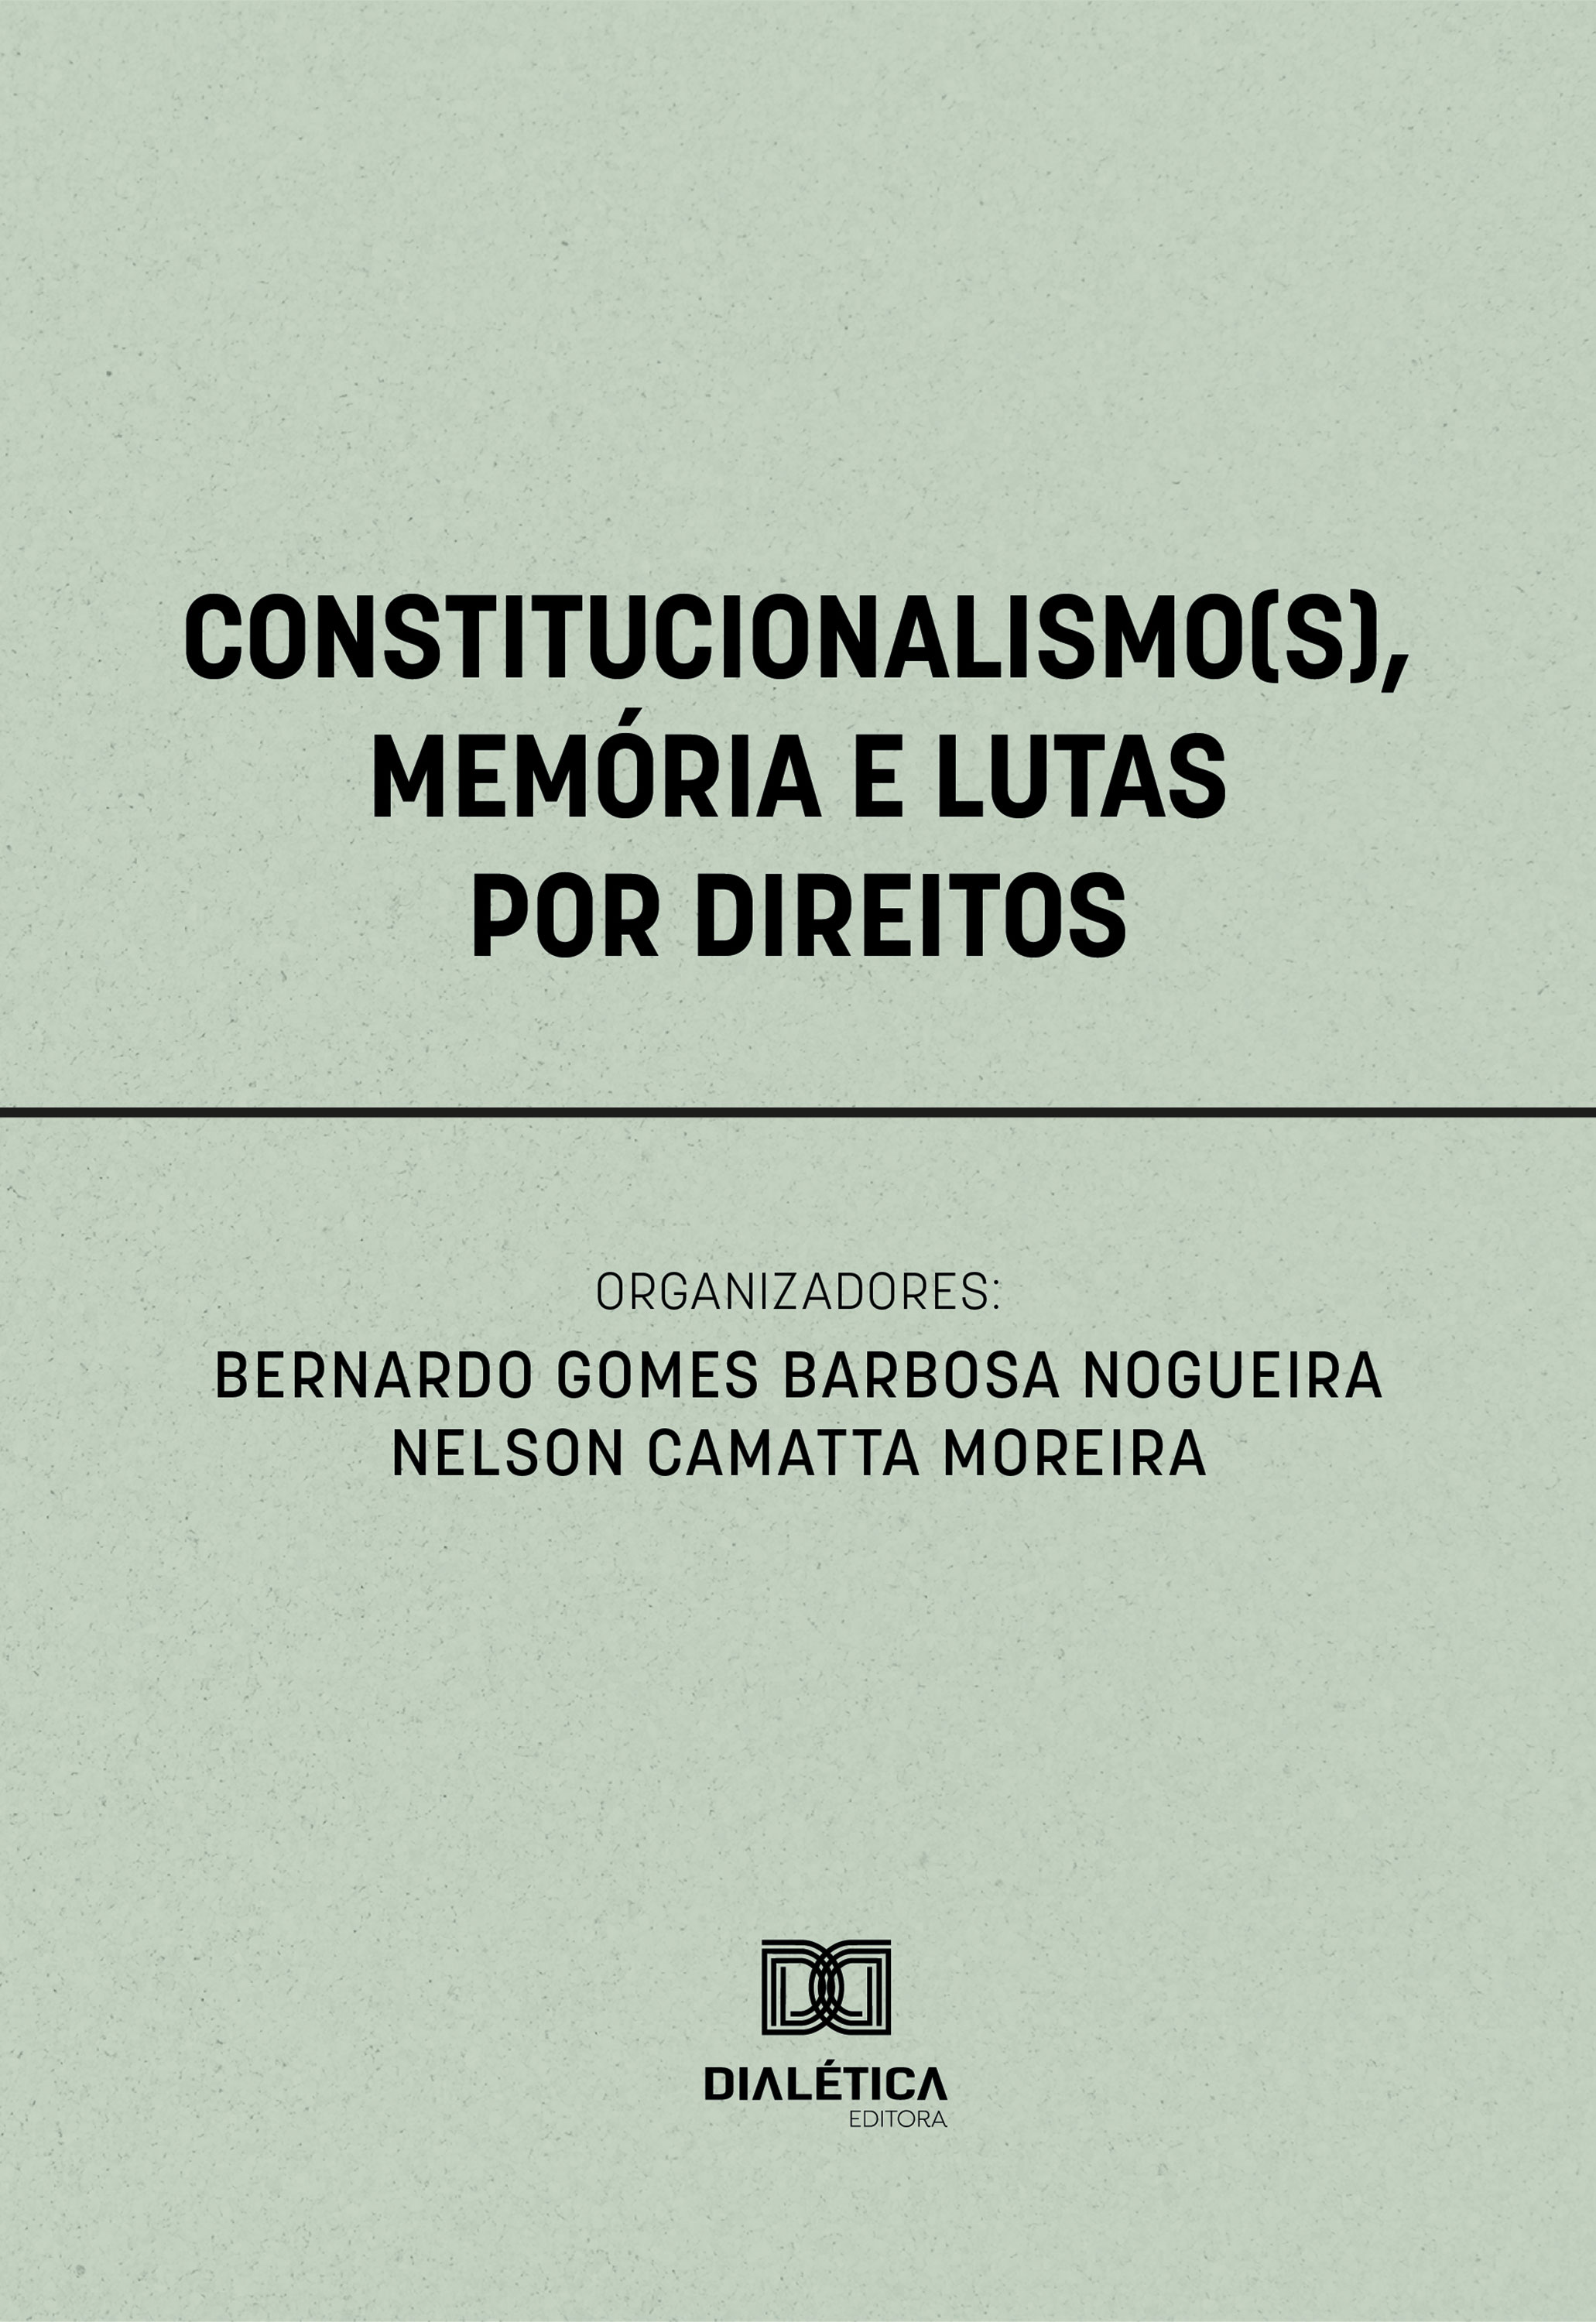 Constitucionalismo(s), Memória e Lutas por Direitos